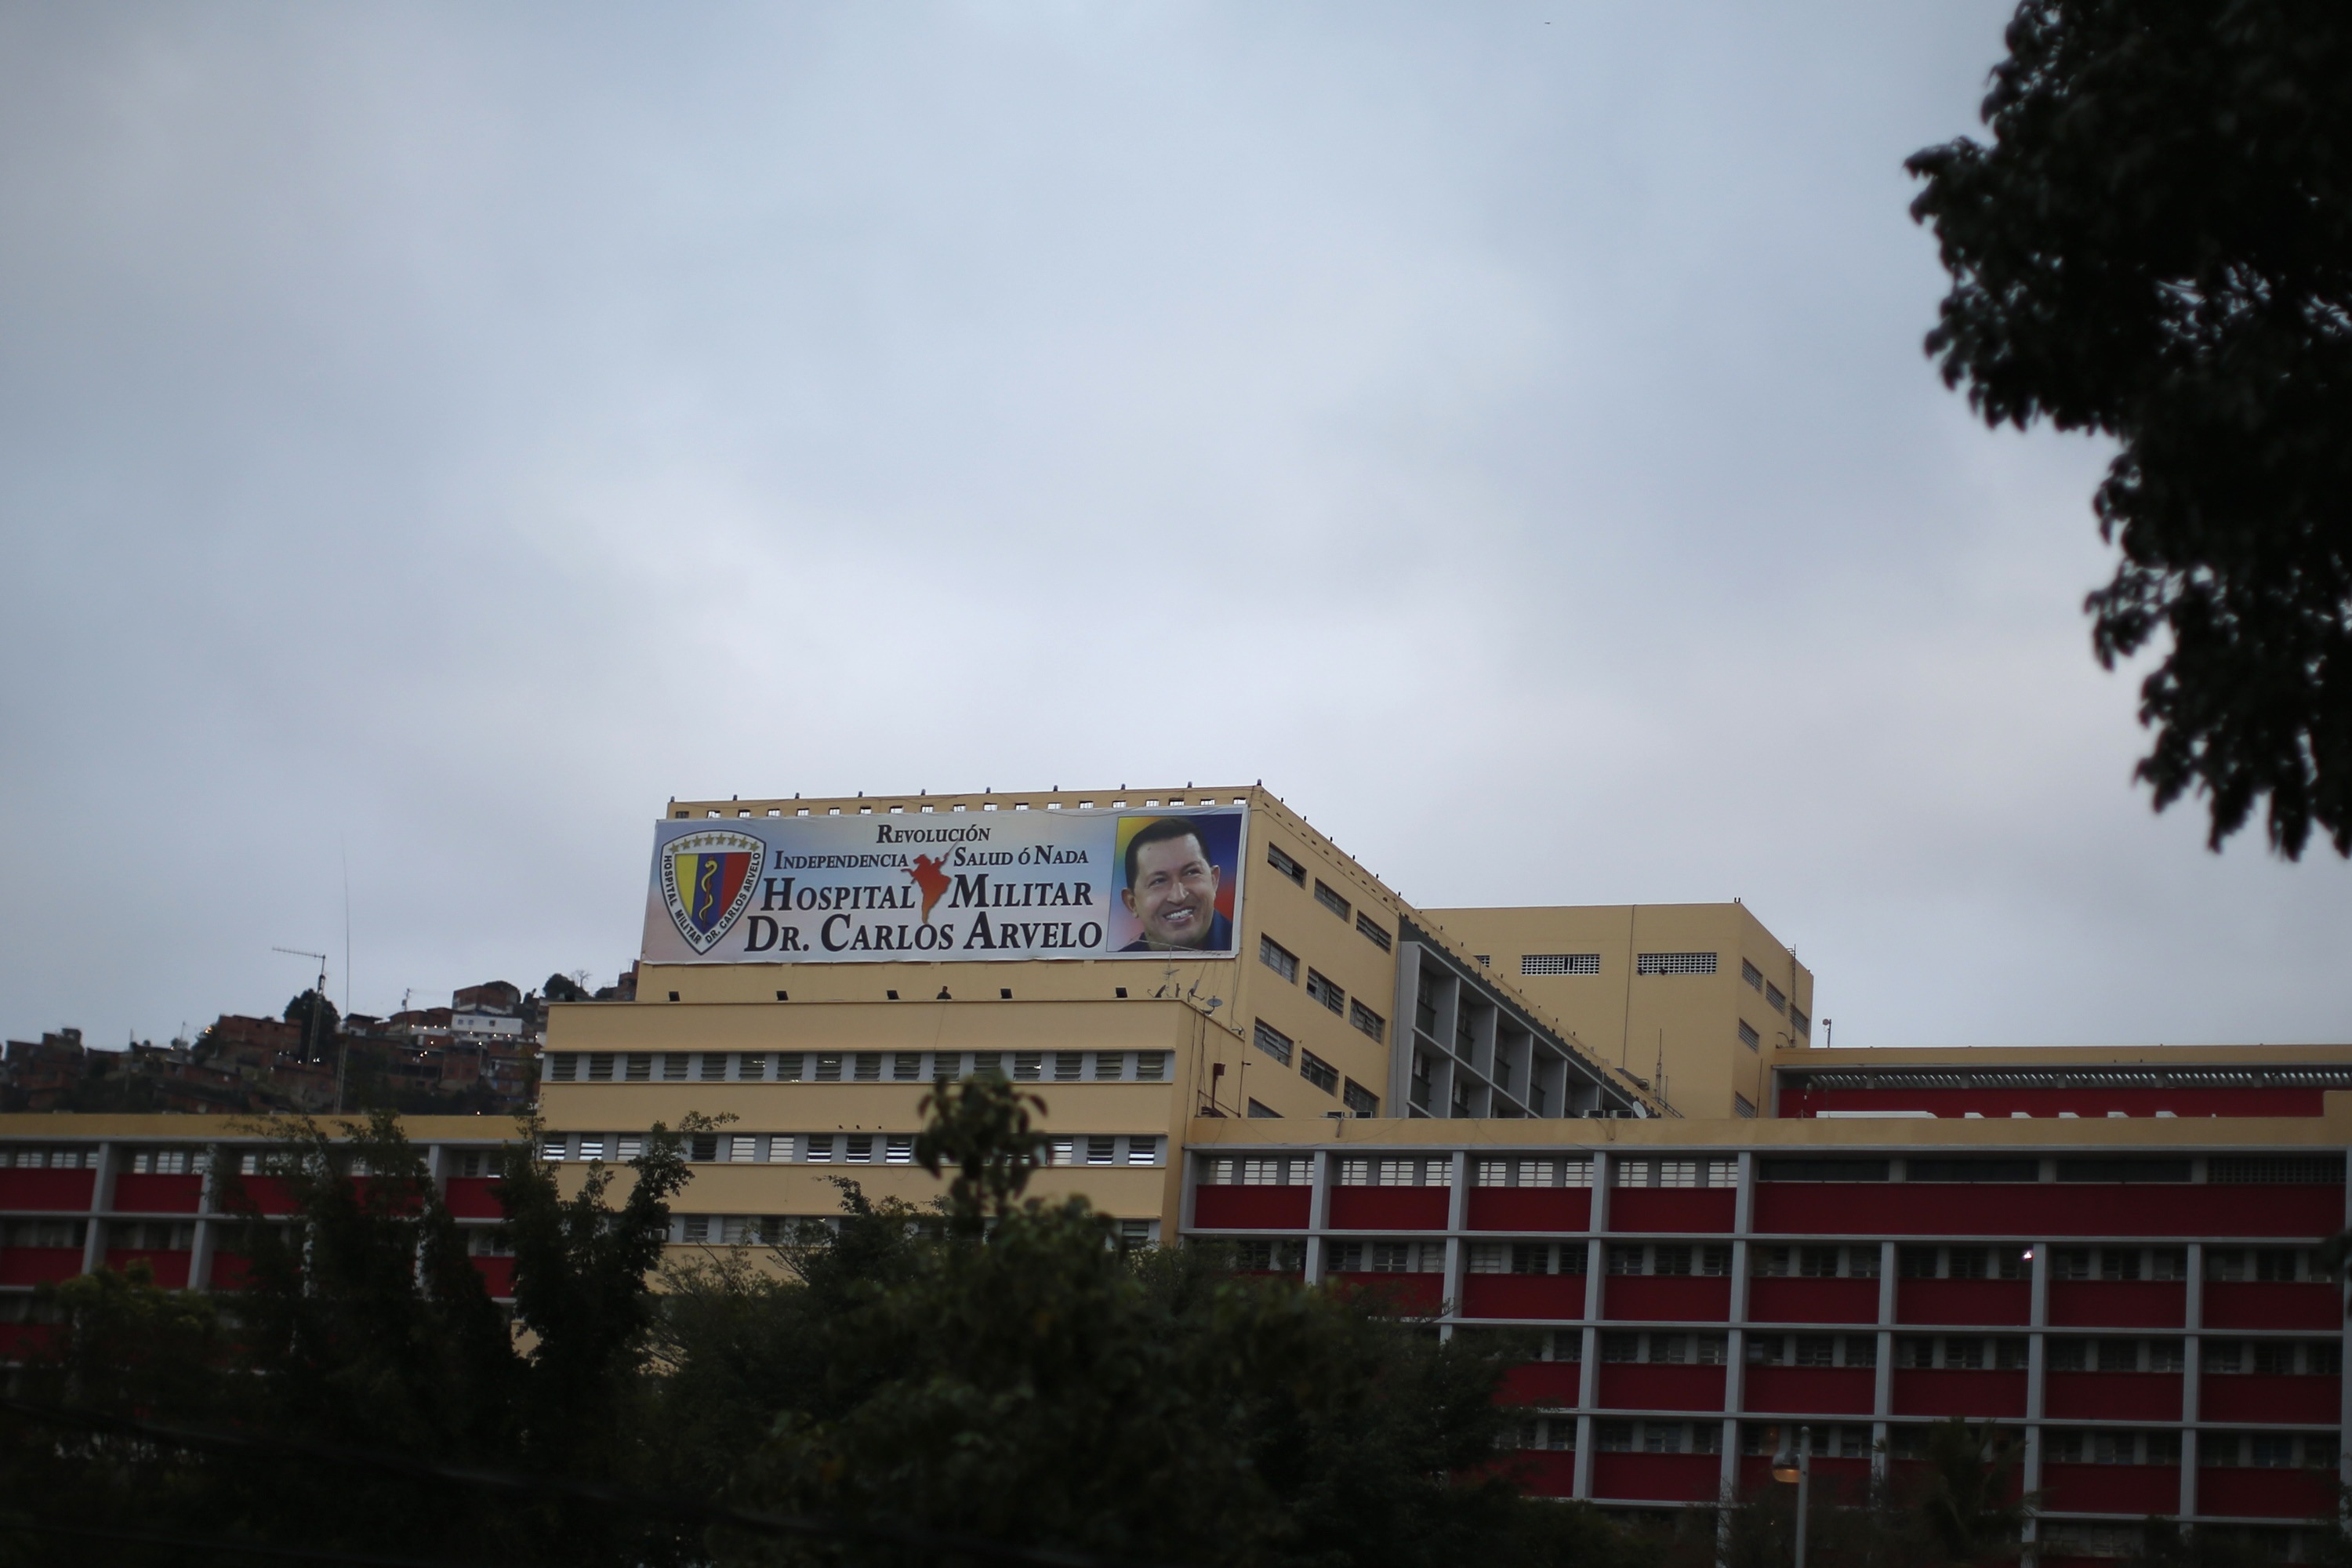 Estarían suspendidas las visitas en el Hospital Militar tras llegada de Chávez